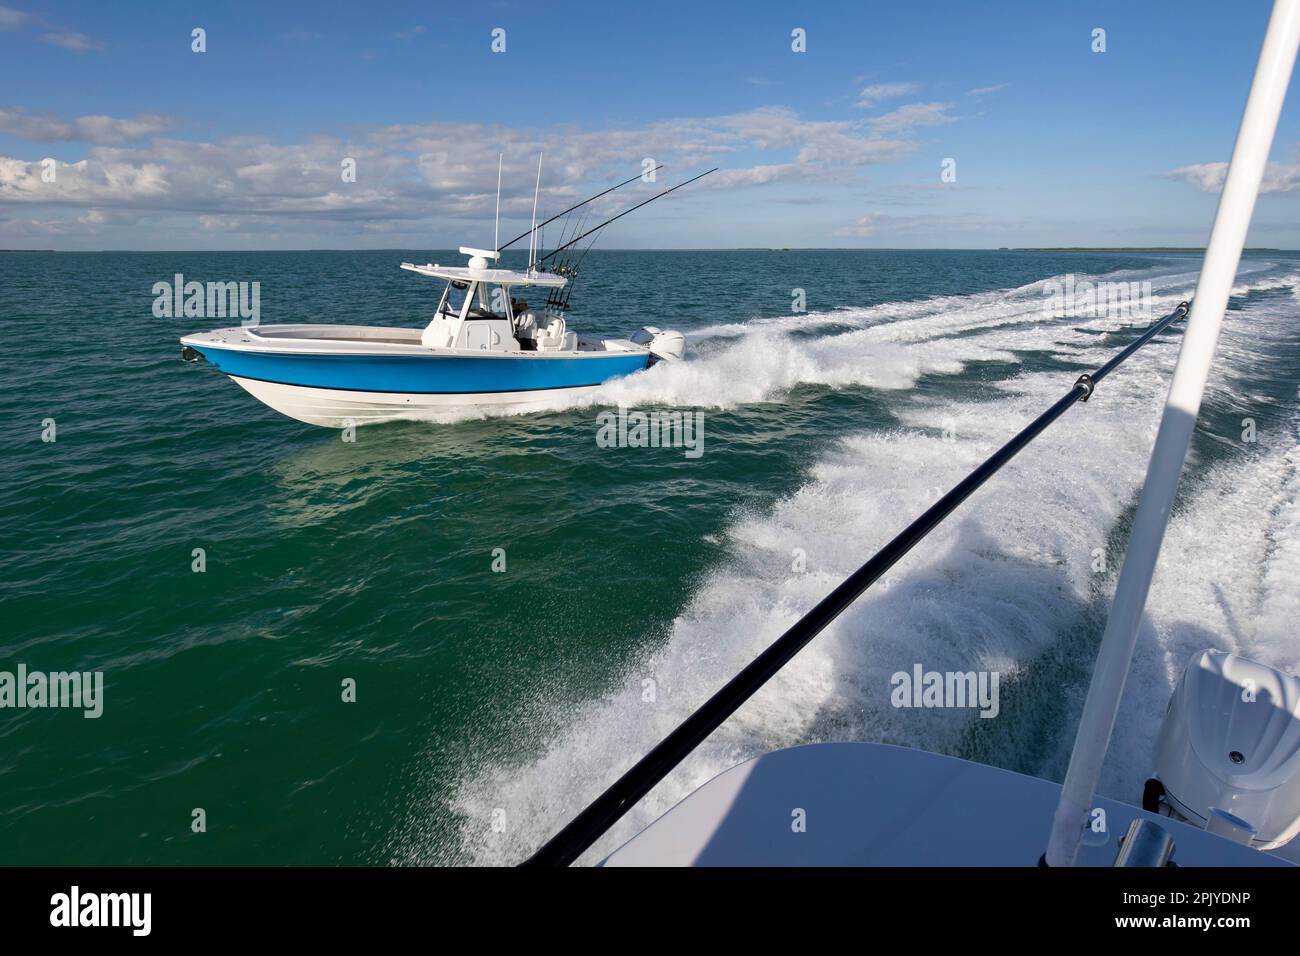 Blick auf das Heck eines rasenden Boots, während ein Fischerboot in der Mittelkonsole entlang fährt. Stockfoto